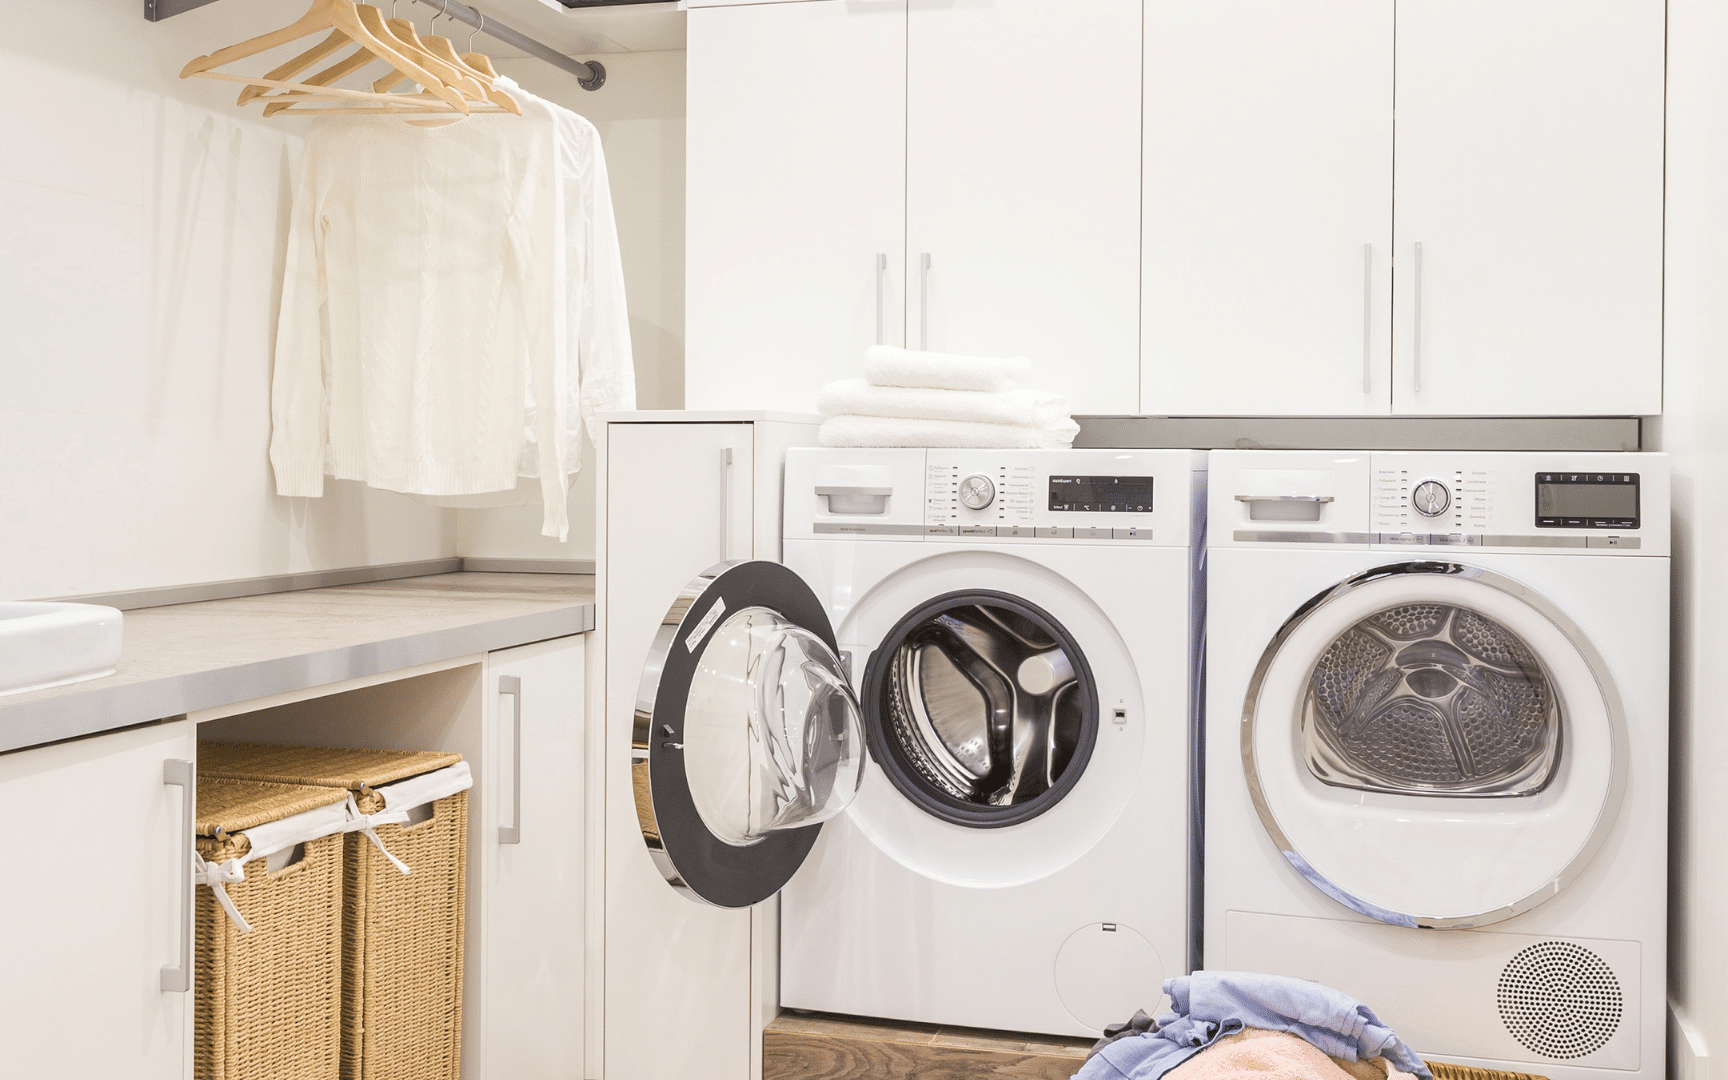 Thiết kế phòng giặt tại nhà vừa ấn tượng, vừa tiện dụng chỉ với 5 cách đơn giản vô cùng